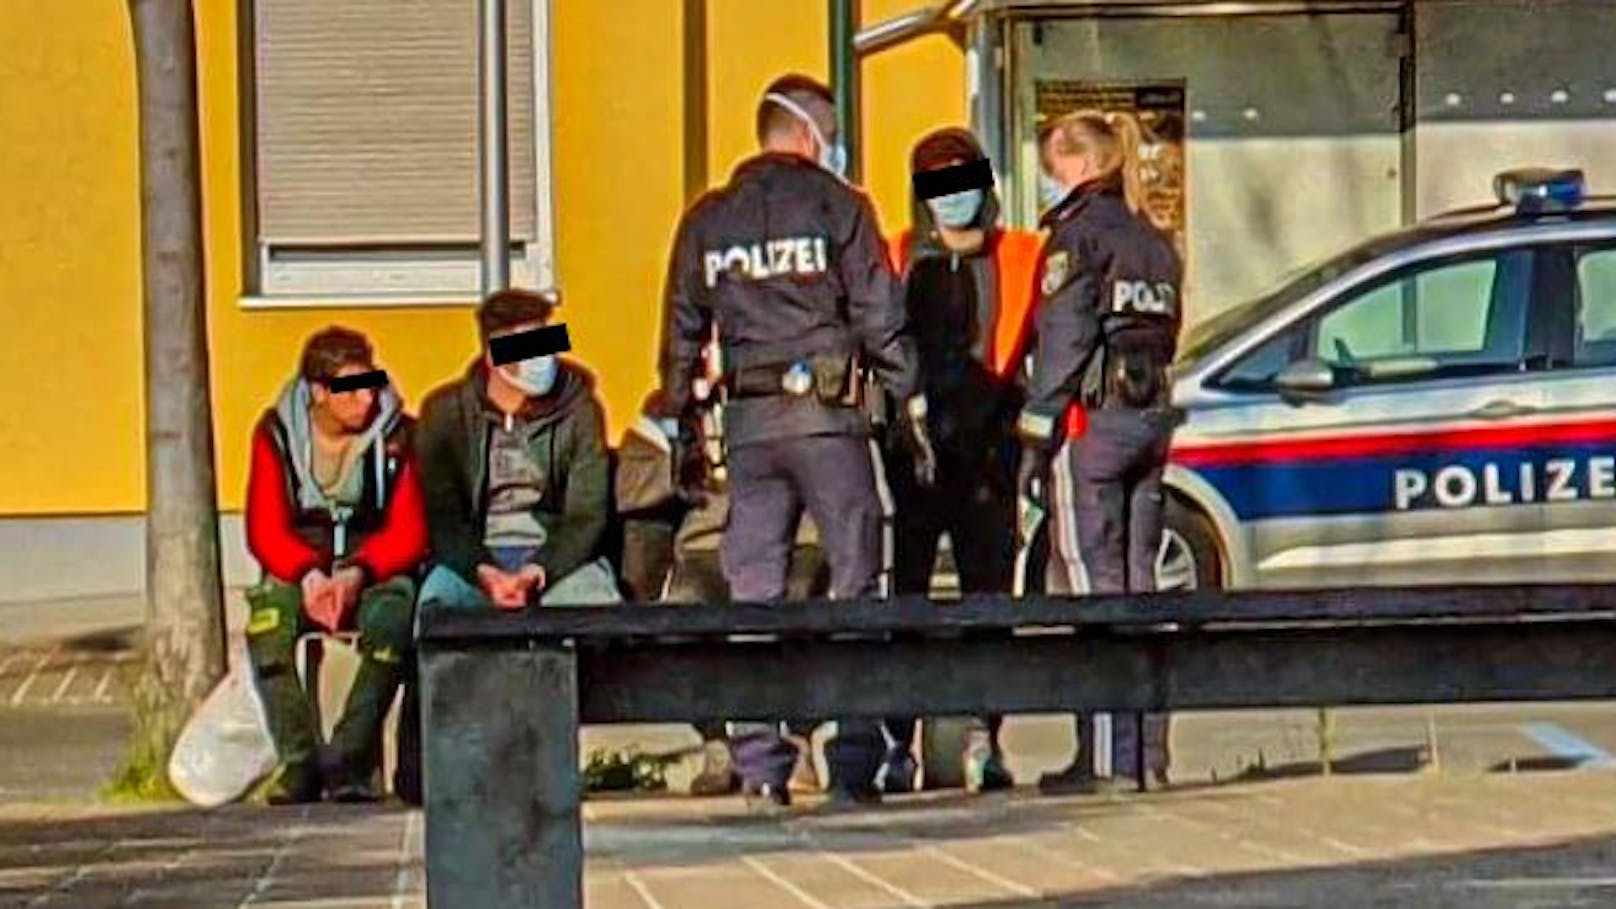 Asylwerber bei einer Polizeikontrolle in Österreich. Symbolbild